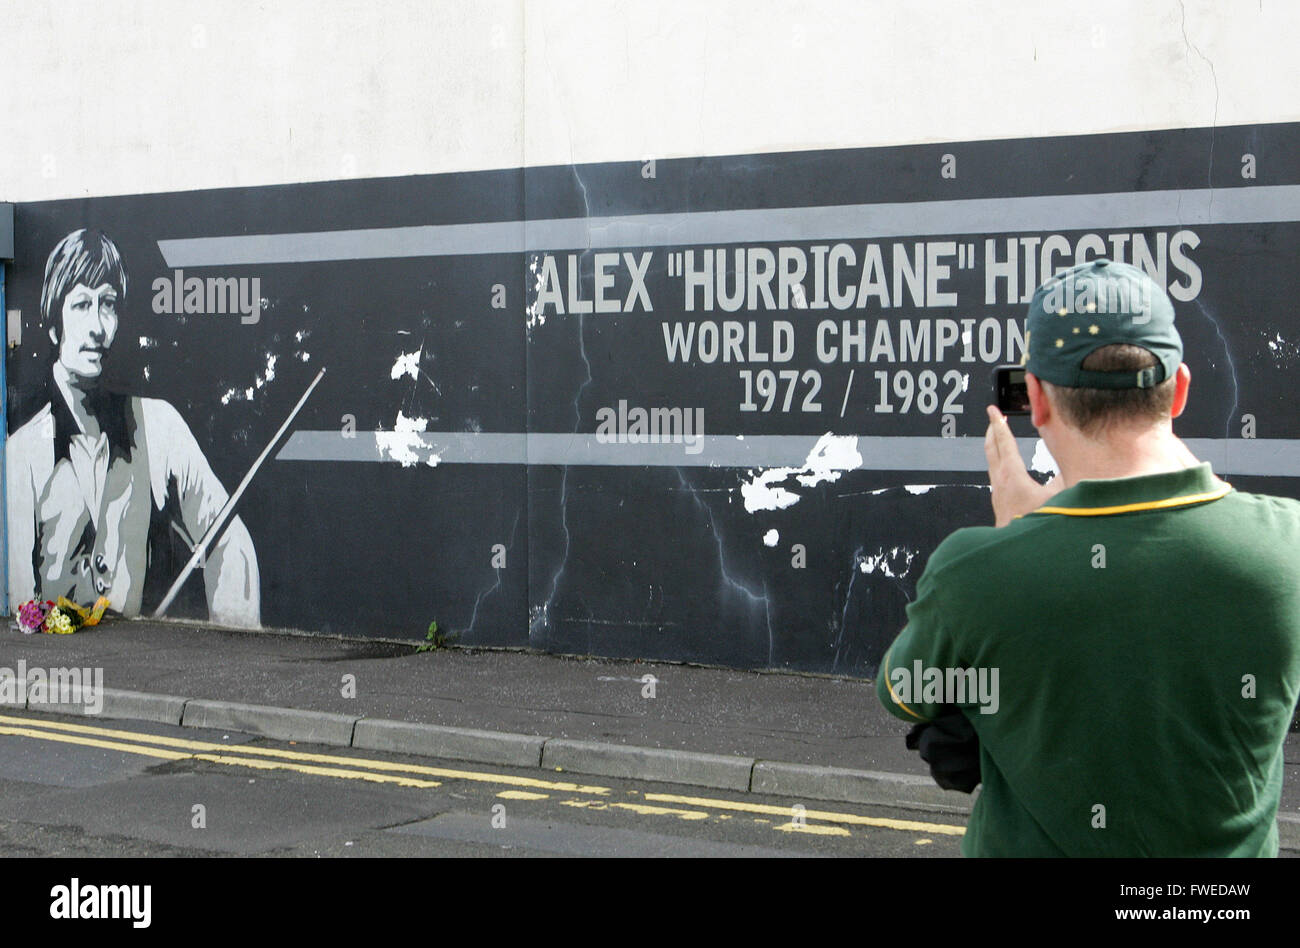 Billar star irlandés Higgins muere. Un turista fotografías un mural del ex campeón de billar Alex Higgins, cerca de su casa en el sur B Foto de stock